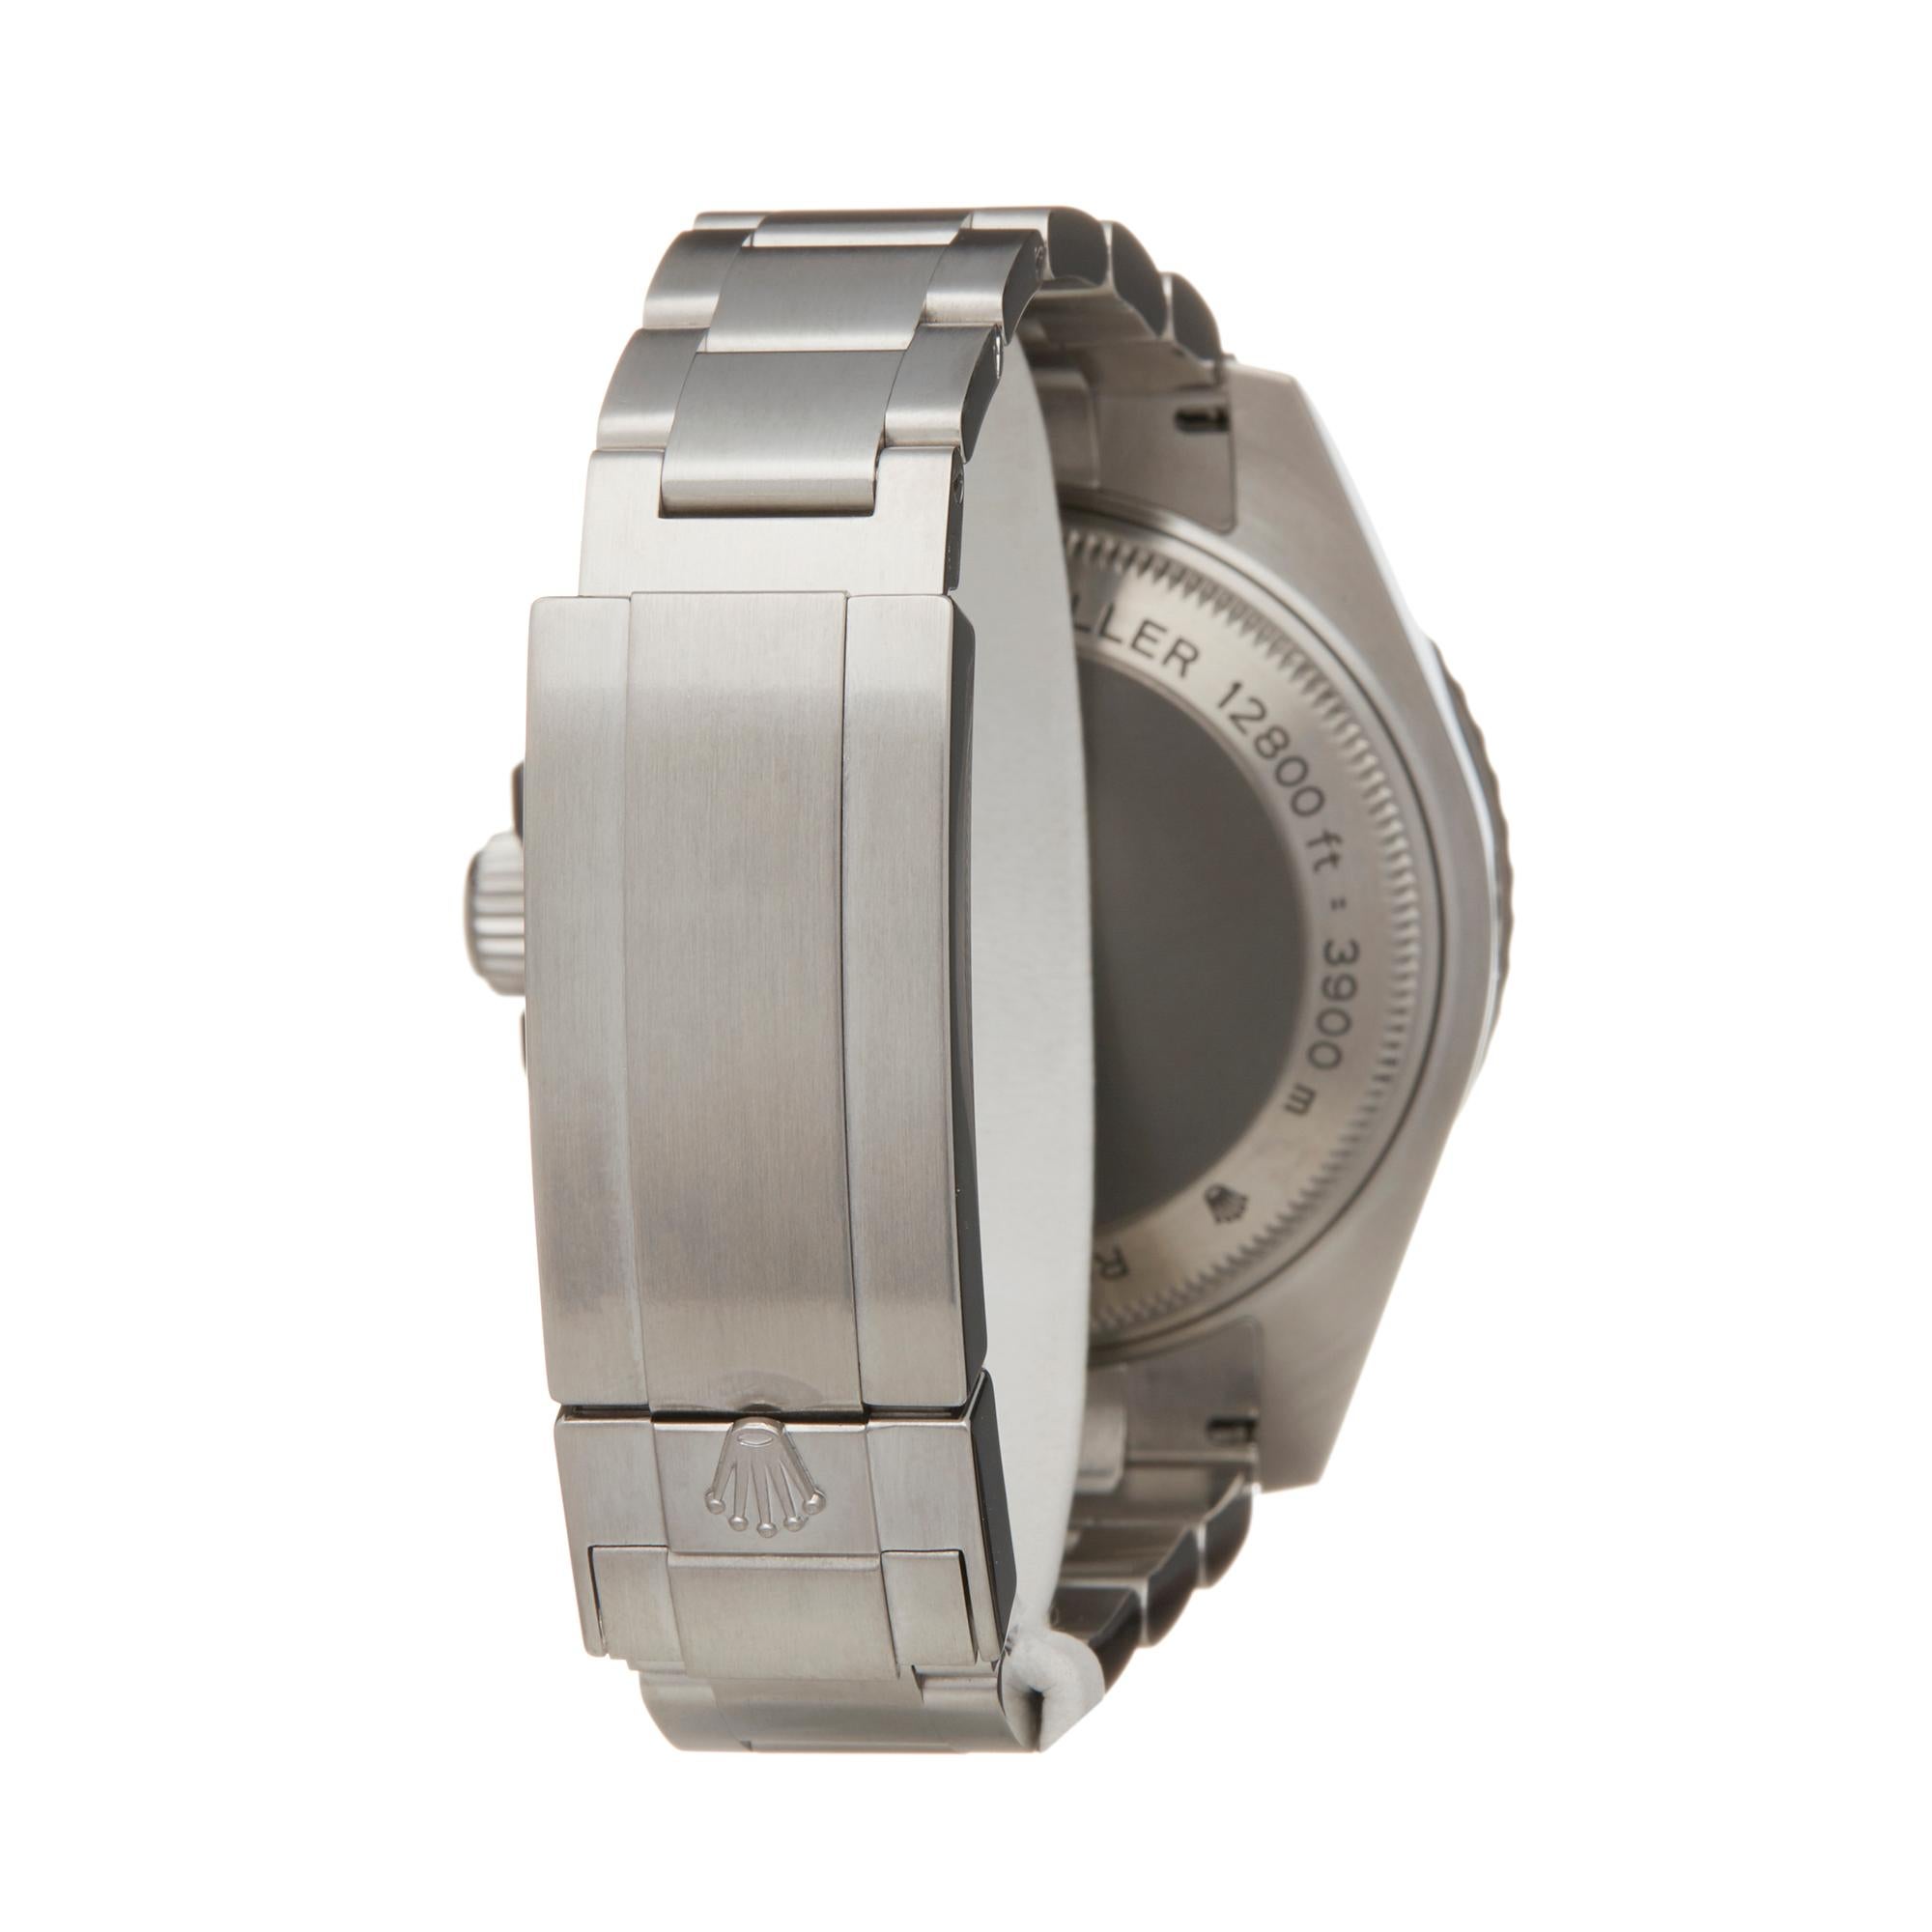 Rolex Sea-Dweller Deepsea Stainless Steel 116660 Wristwatch 1